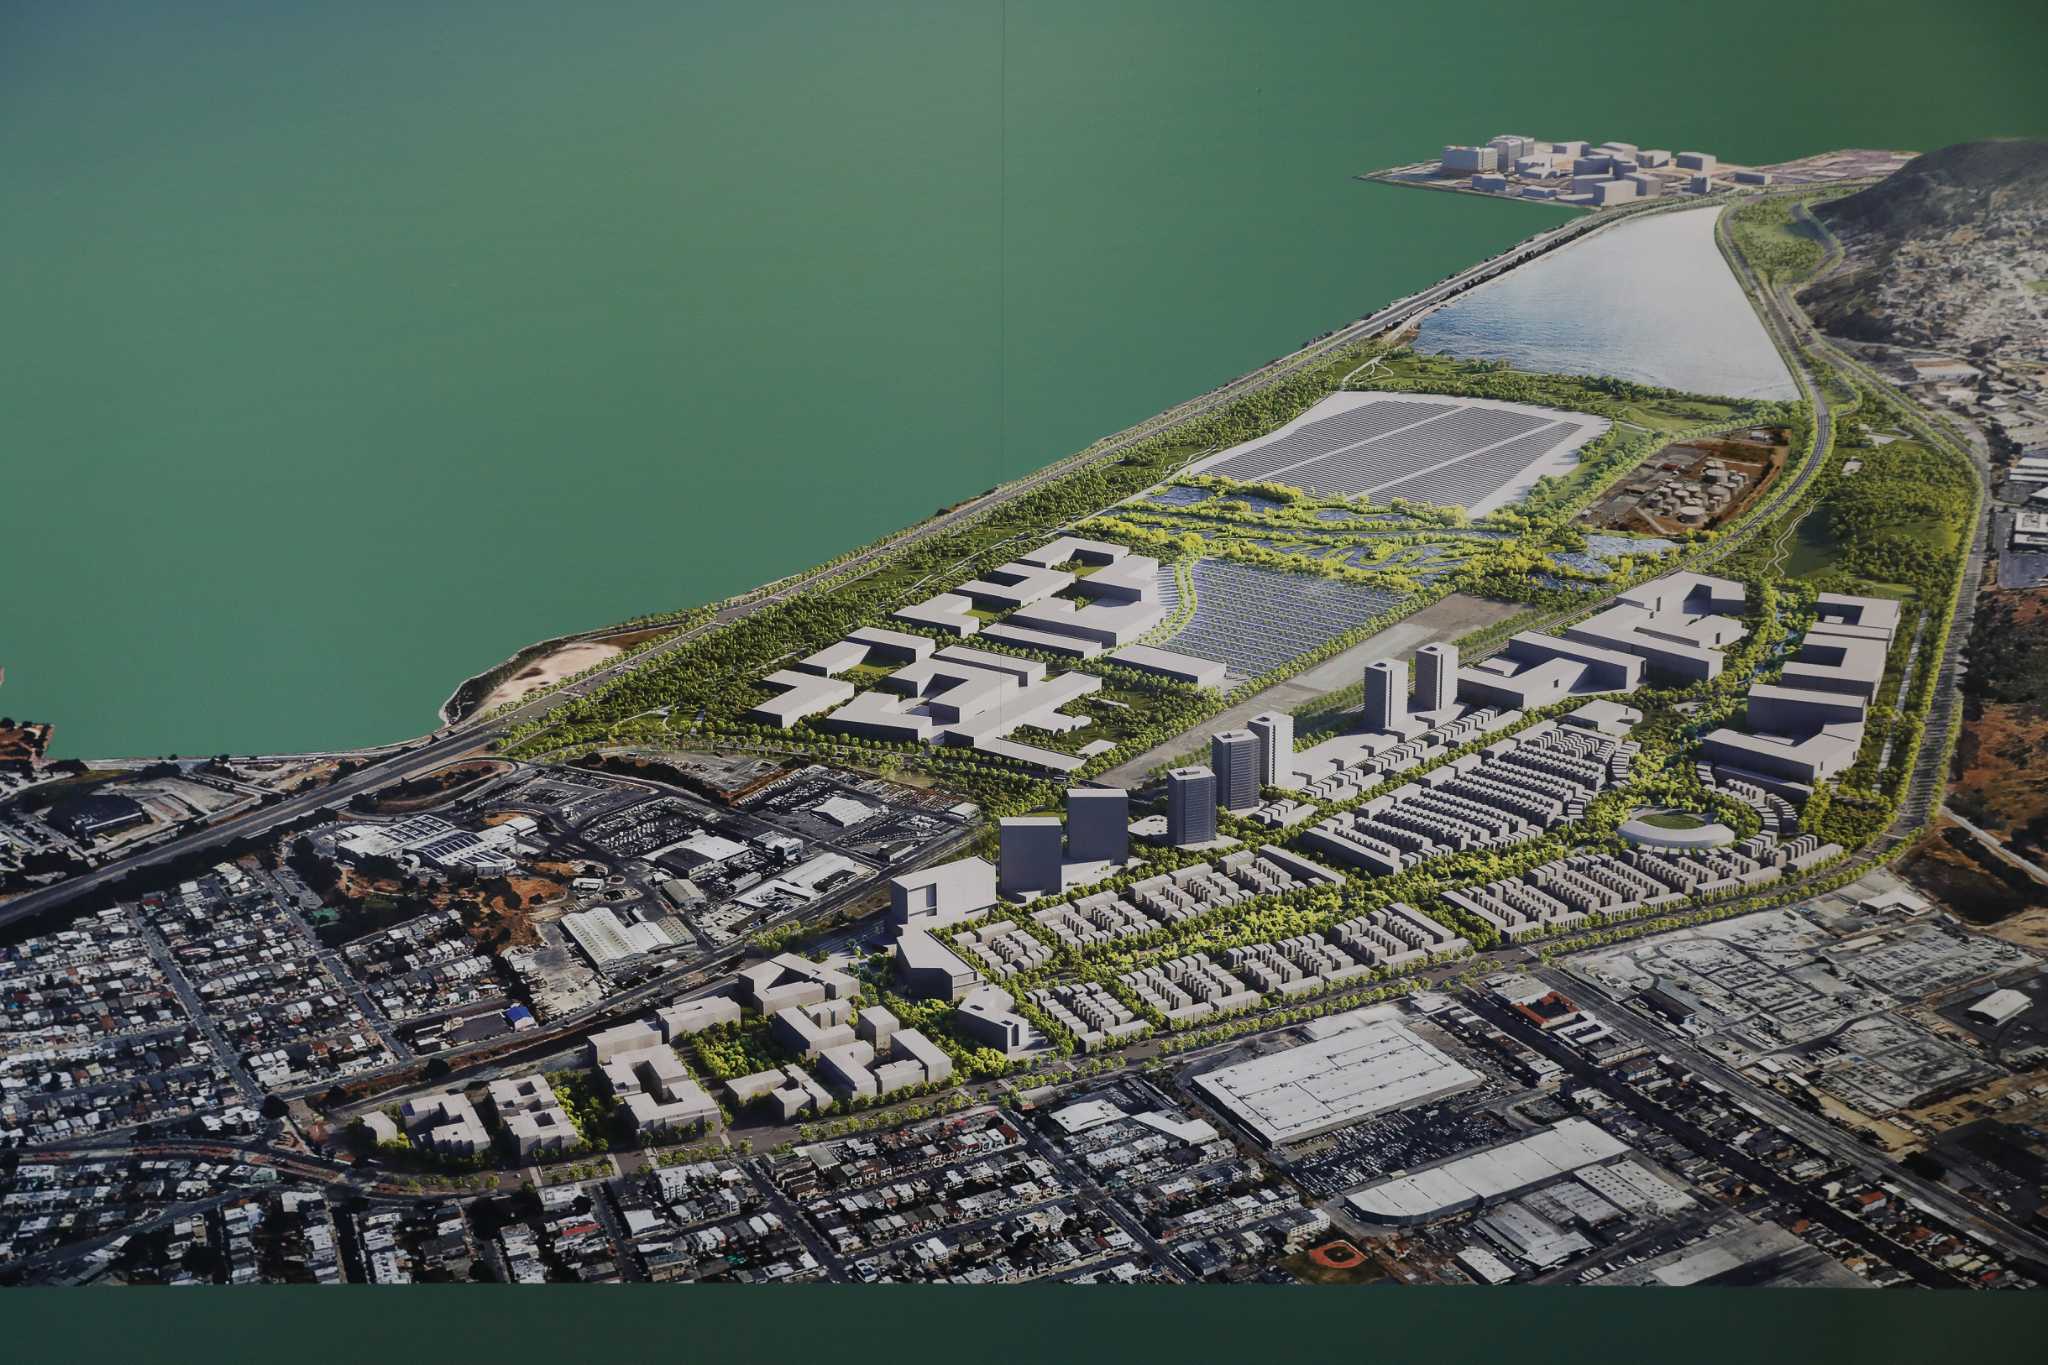 “15分钟城市”：旧金山最大的发展项目终将动工